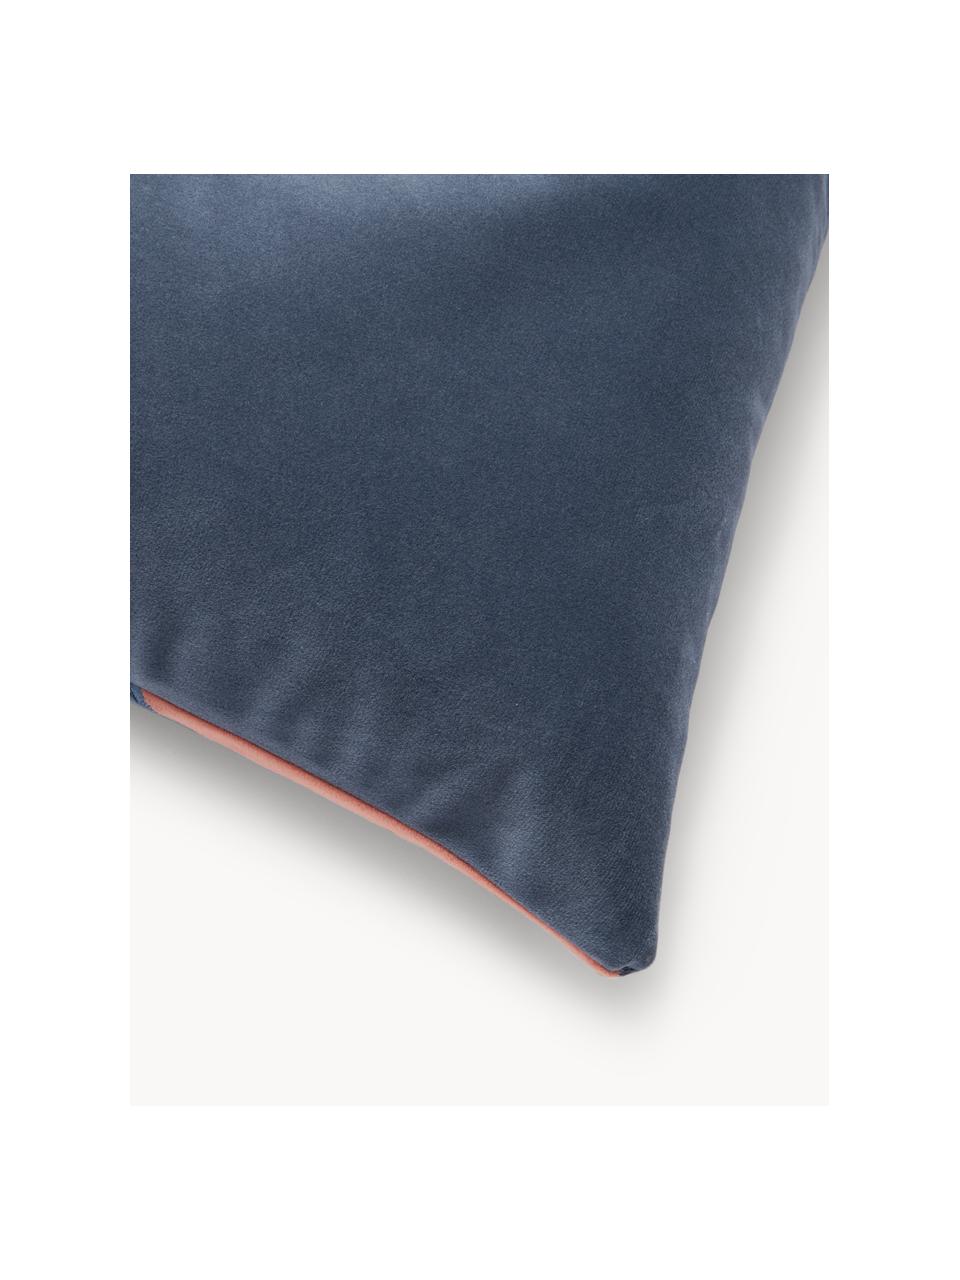 Poszewka na poduszkę z aksamitu Jaxon, 100% aksamit poliestrowy, Niebieski, brudny różowy, S 45 x D 45 cm